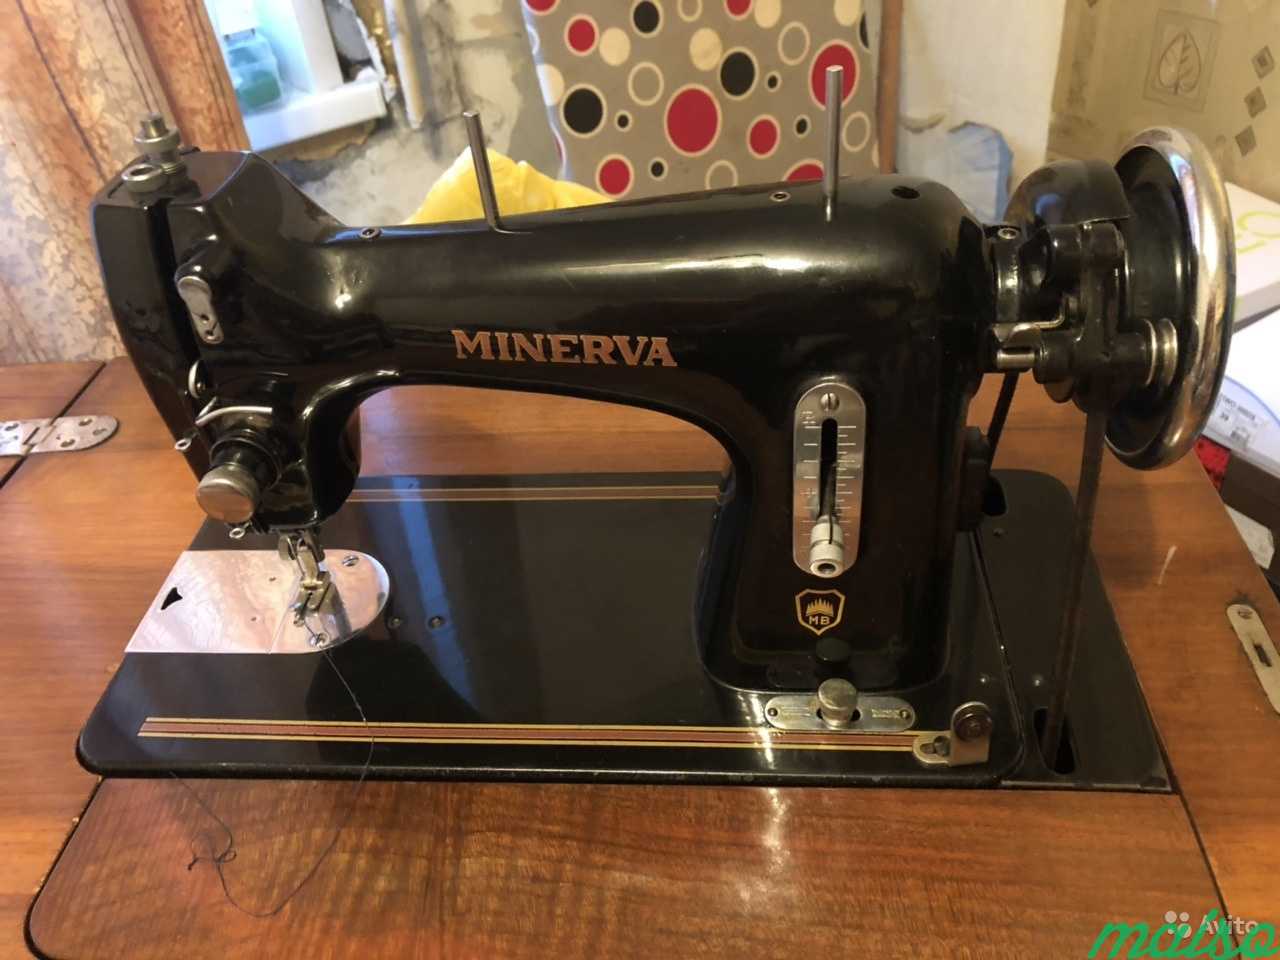 Minerva 233